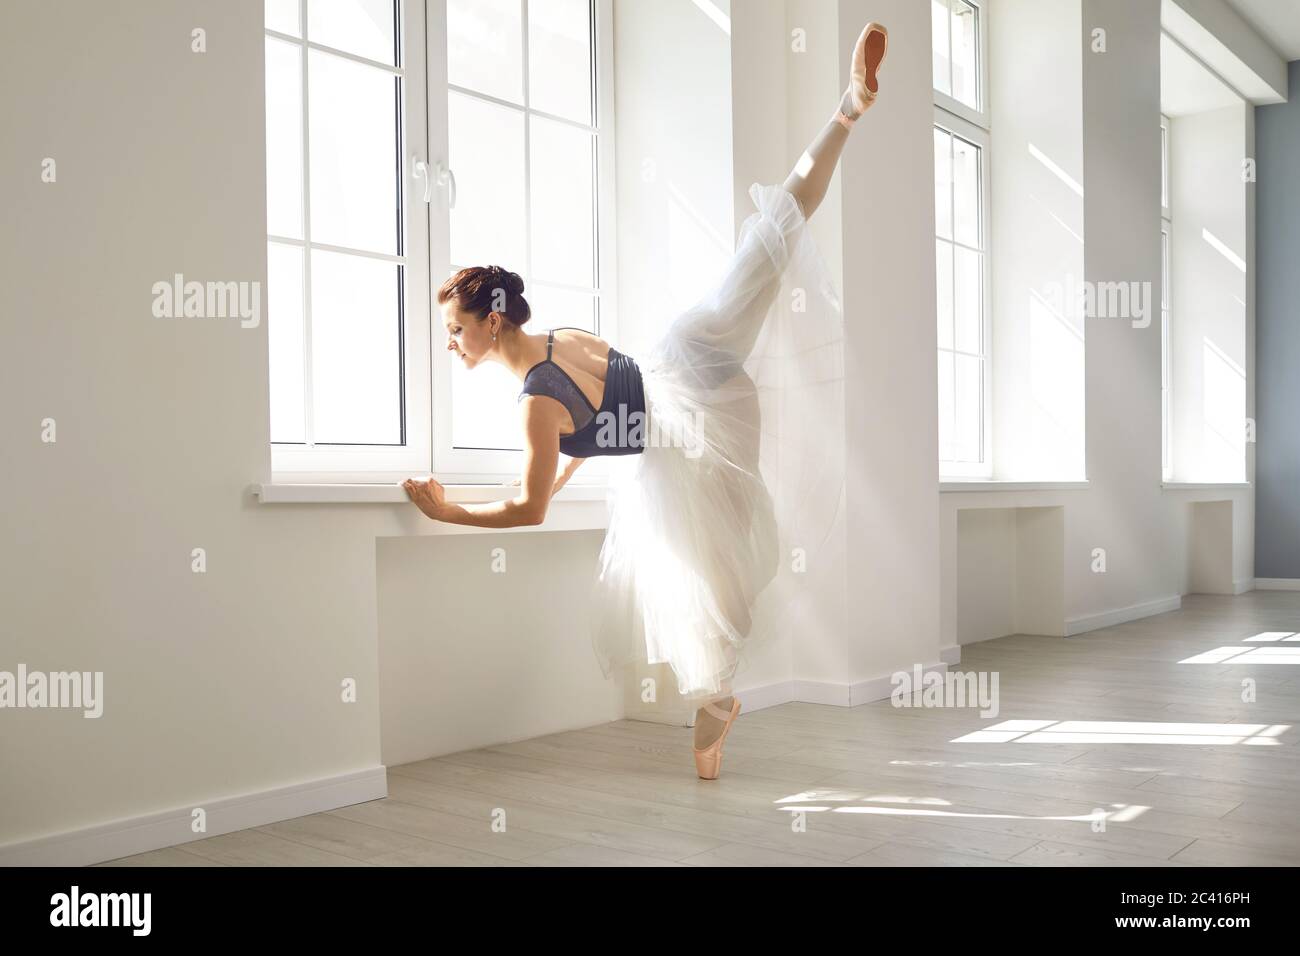 Ballerine. Une jeune danseuse de ballet gracieuse répète une représentation dans un studio de classe blanche Banque D'Images